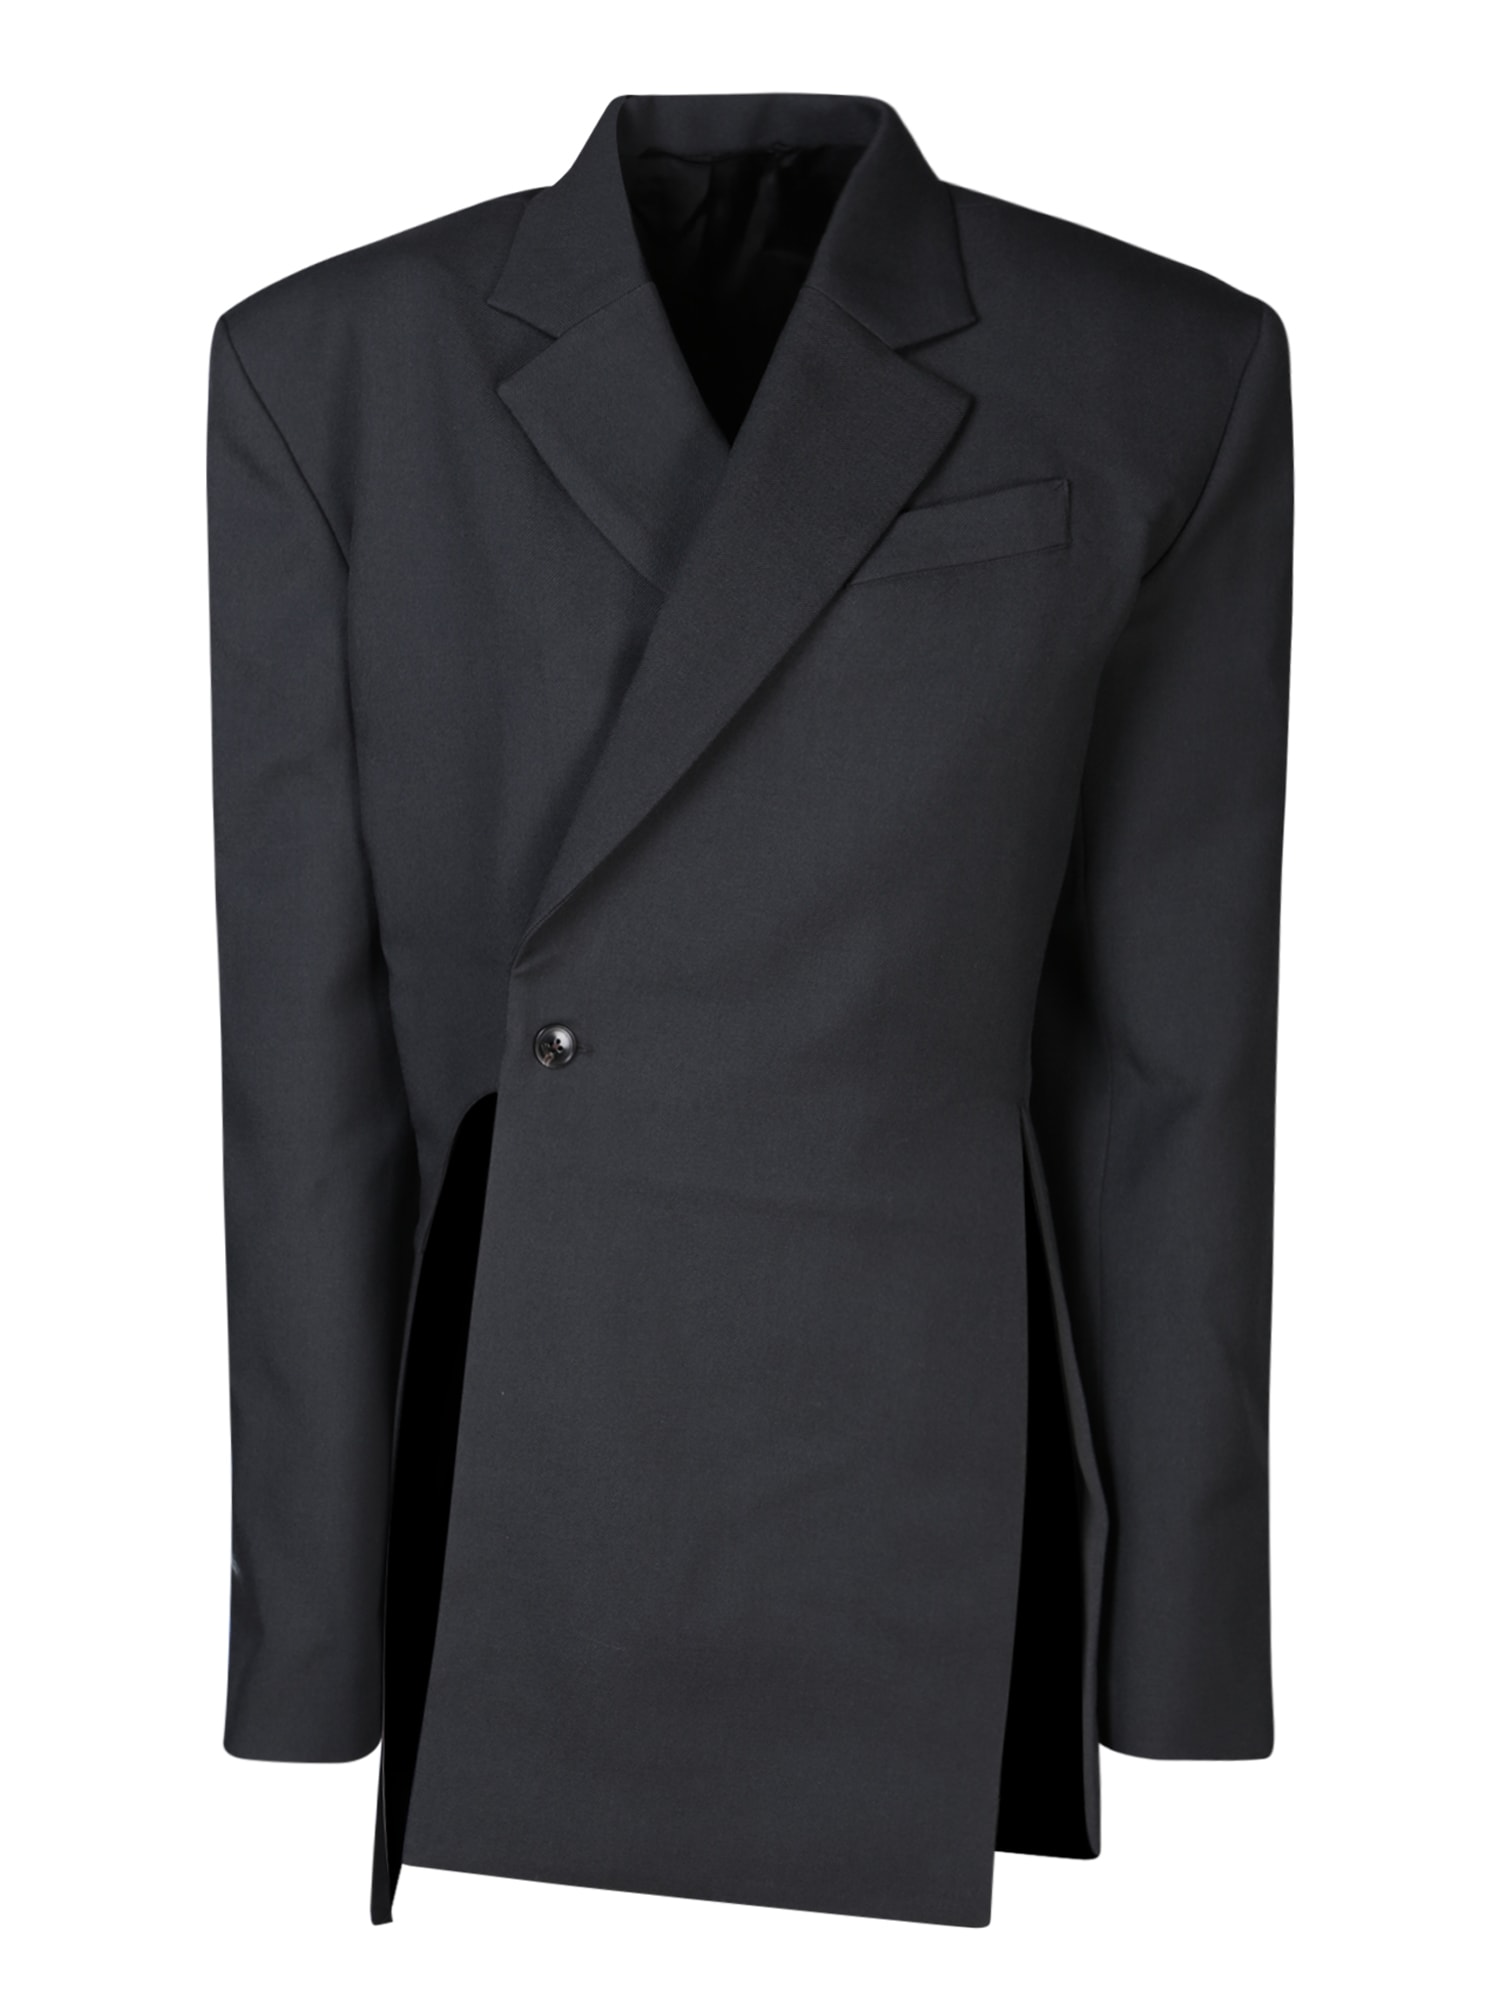 Asymmetric Dark Grey Jacket